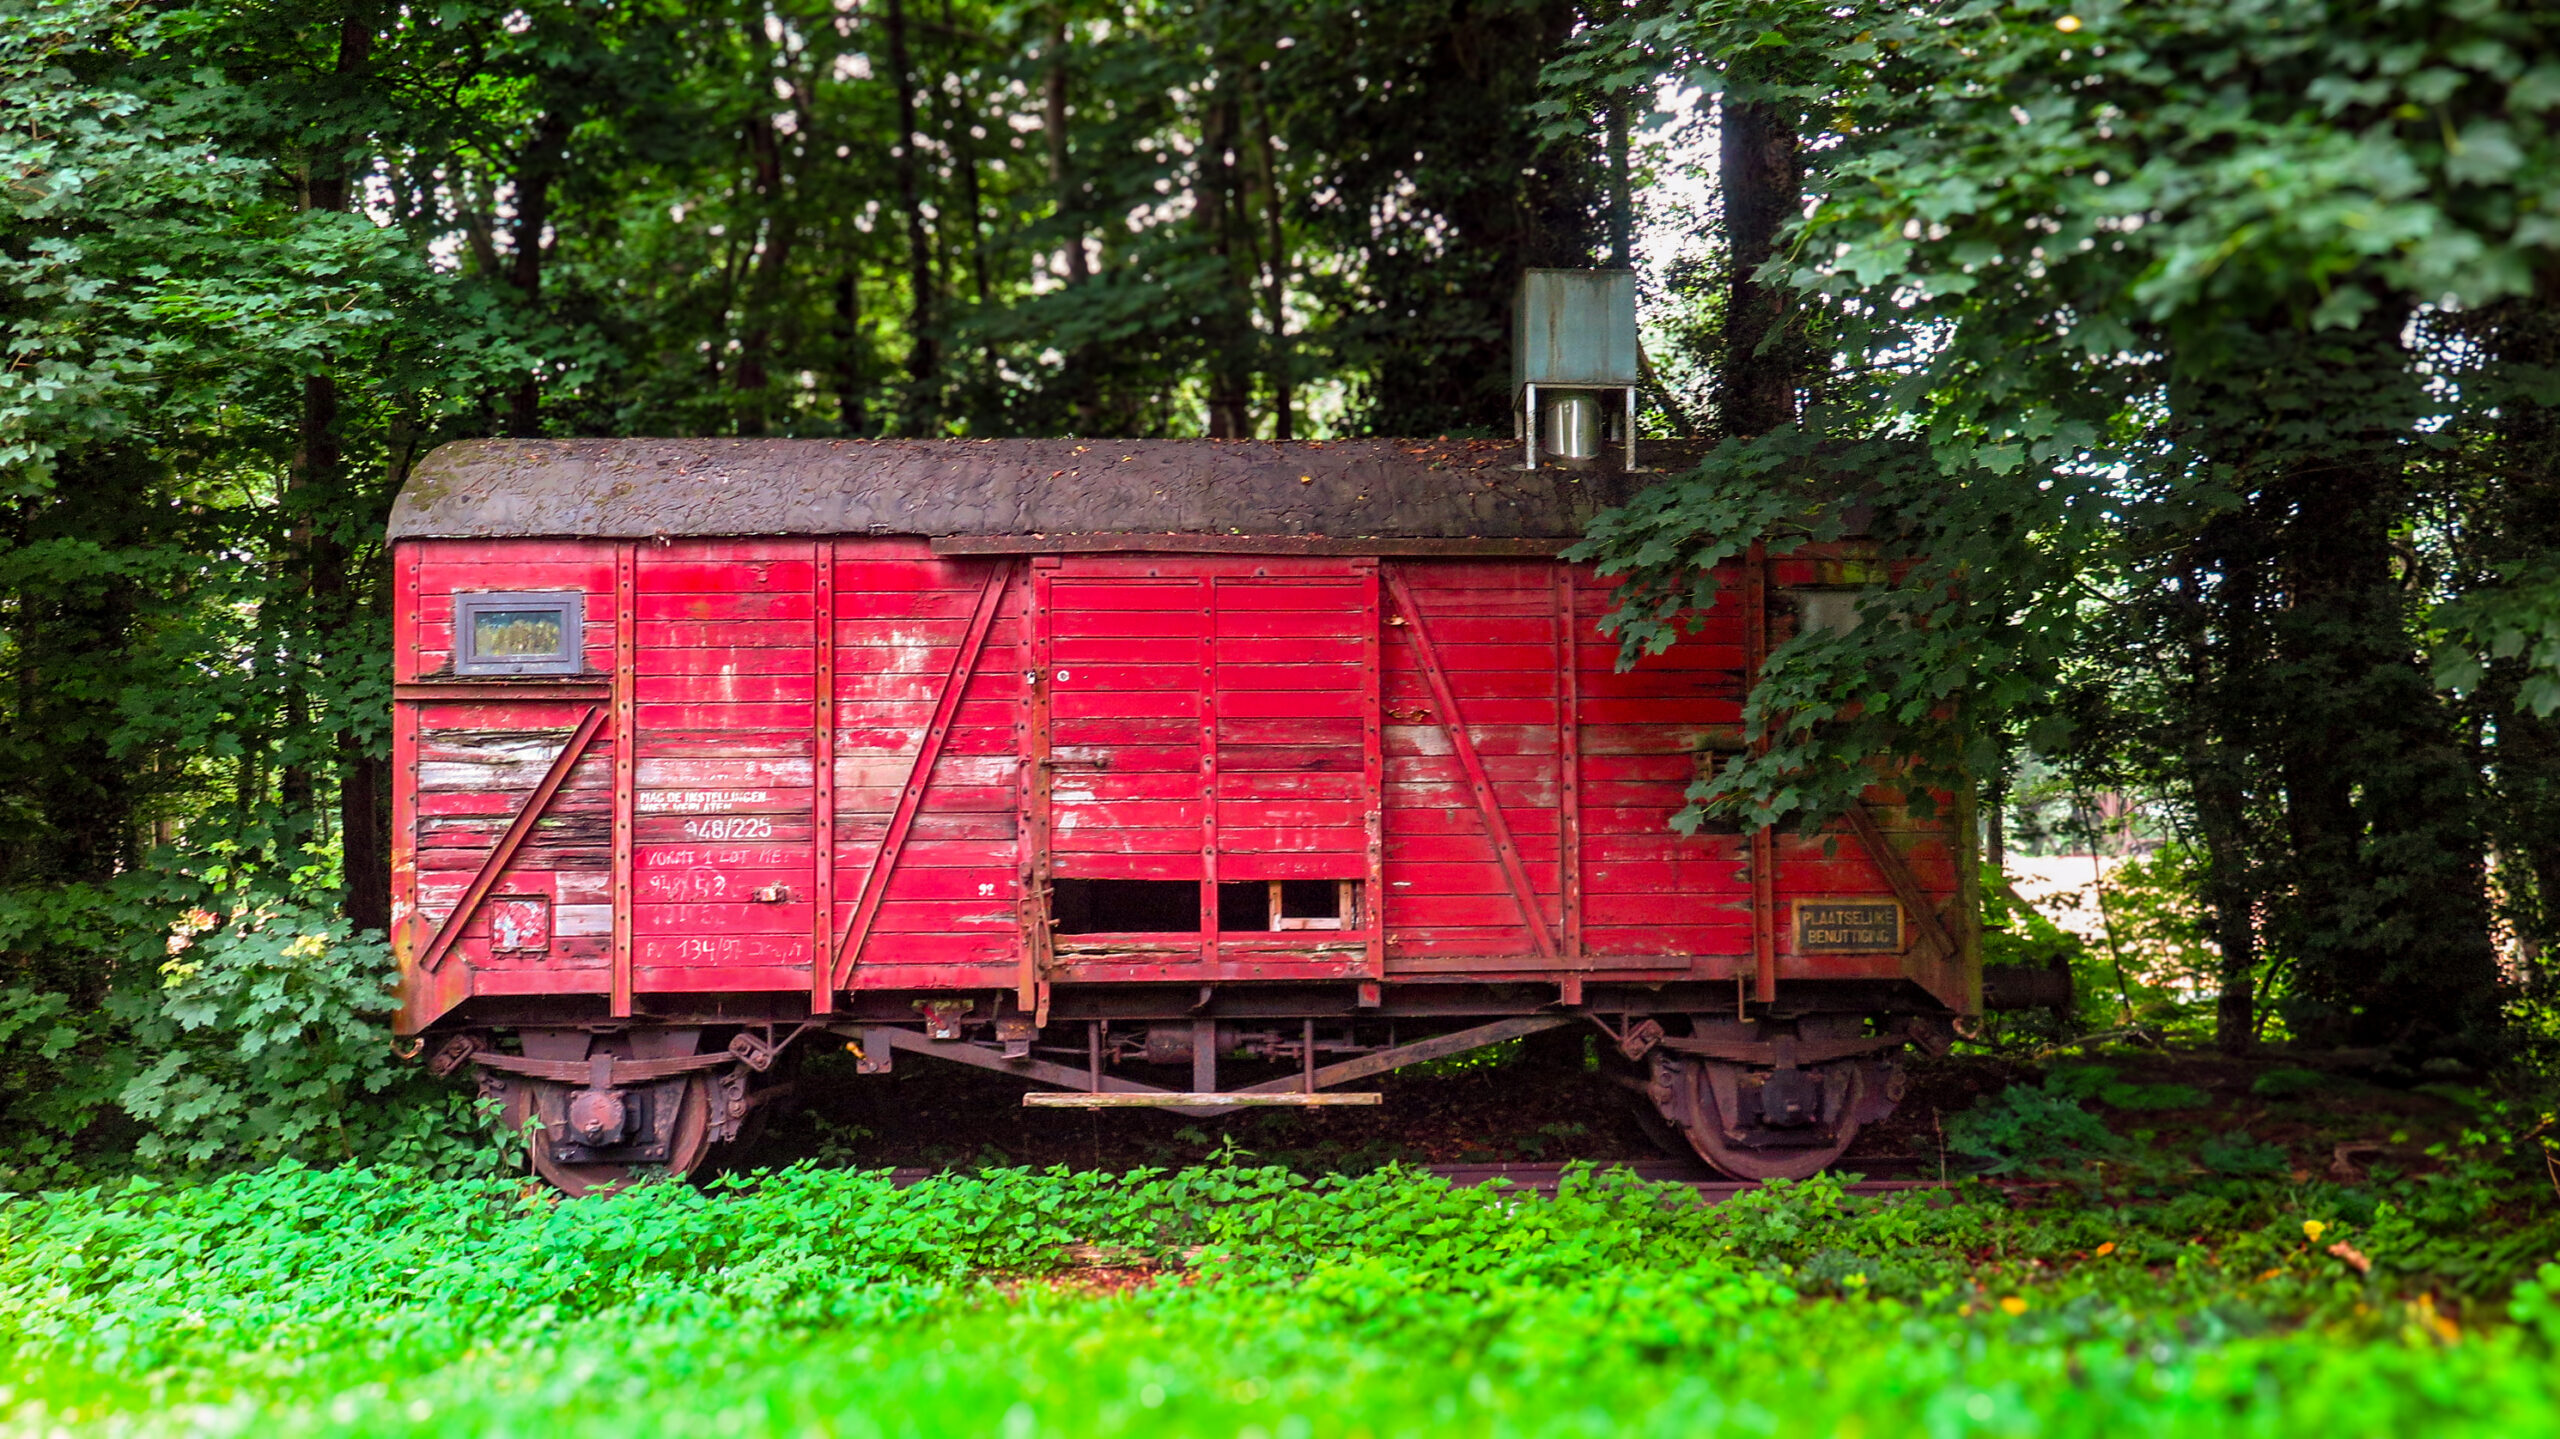 Rode Treinwagon in het groen van Tervuren